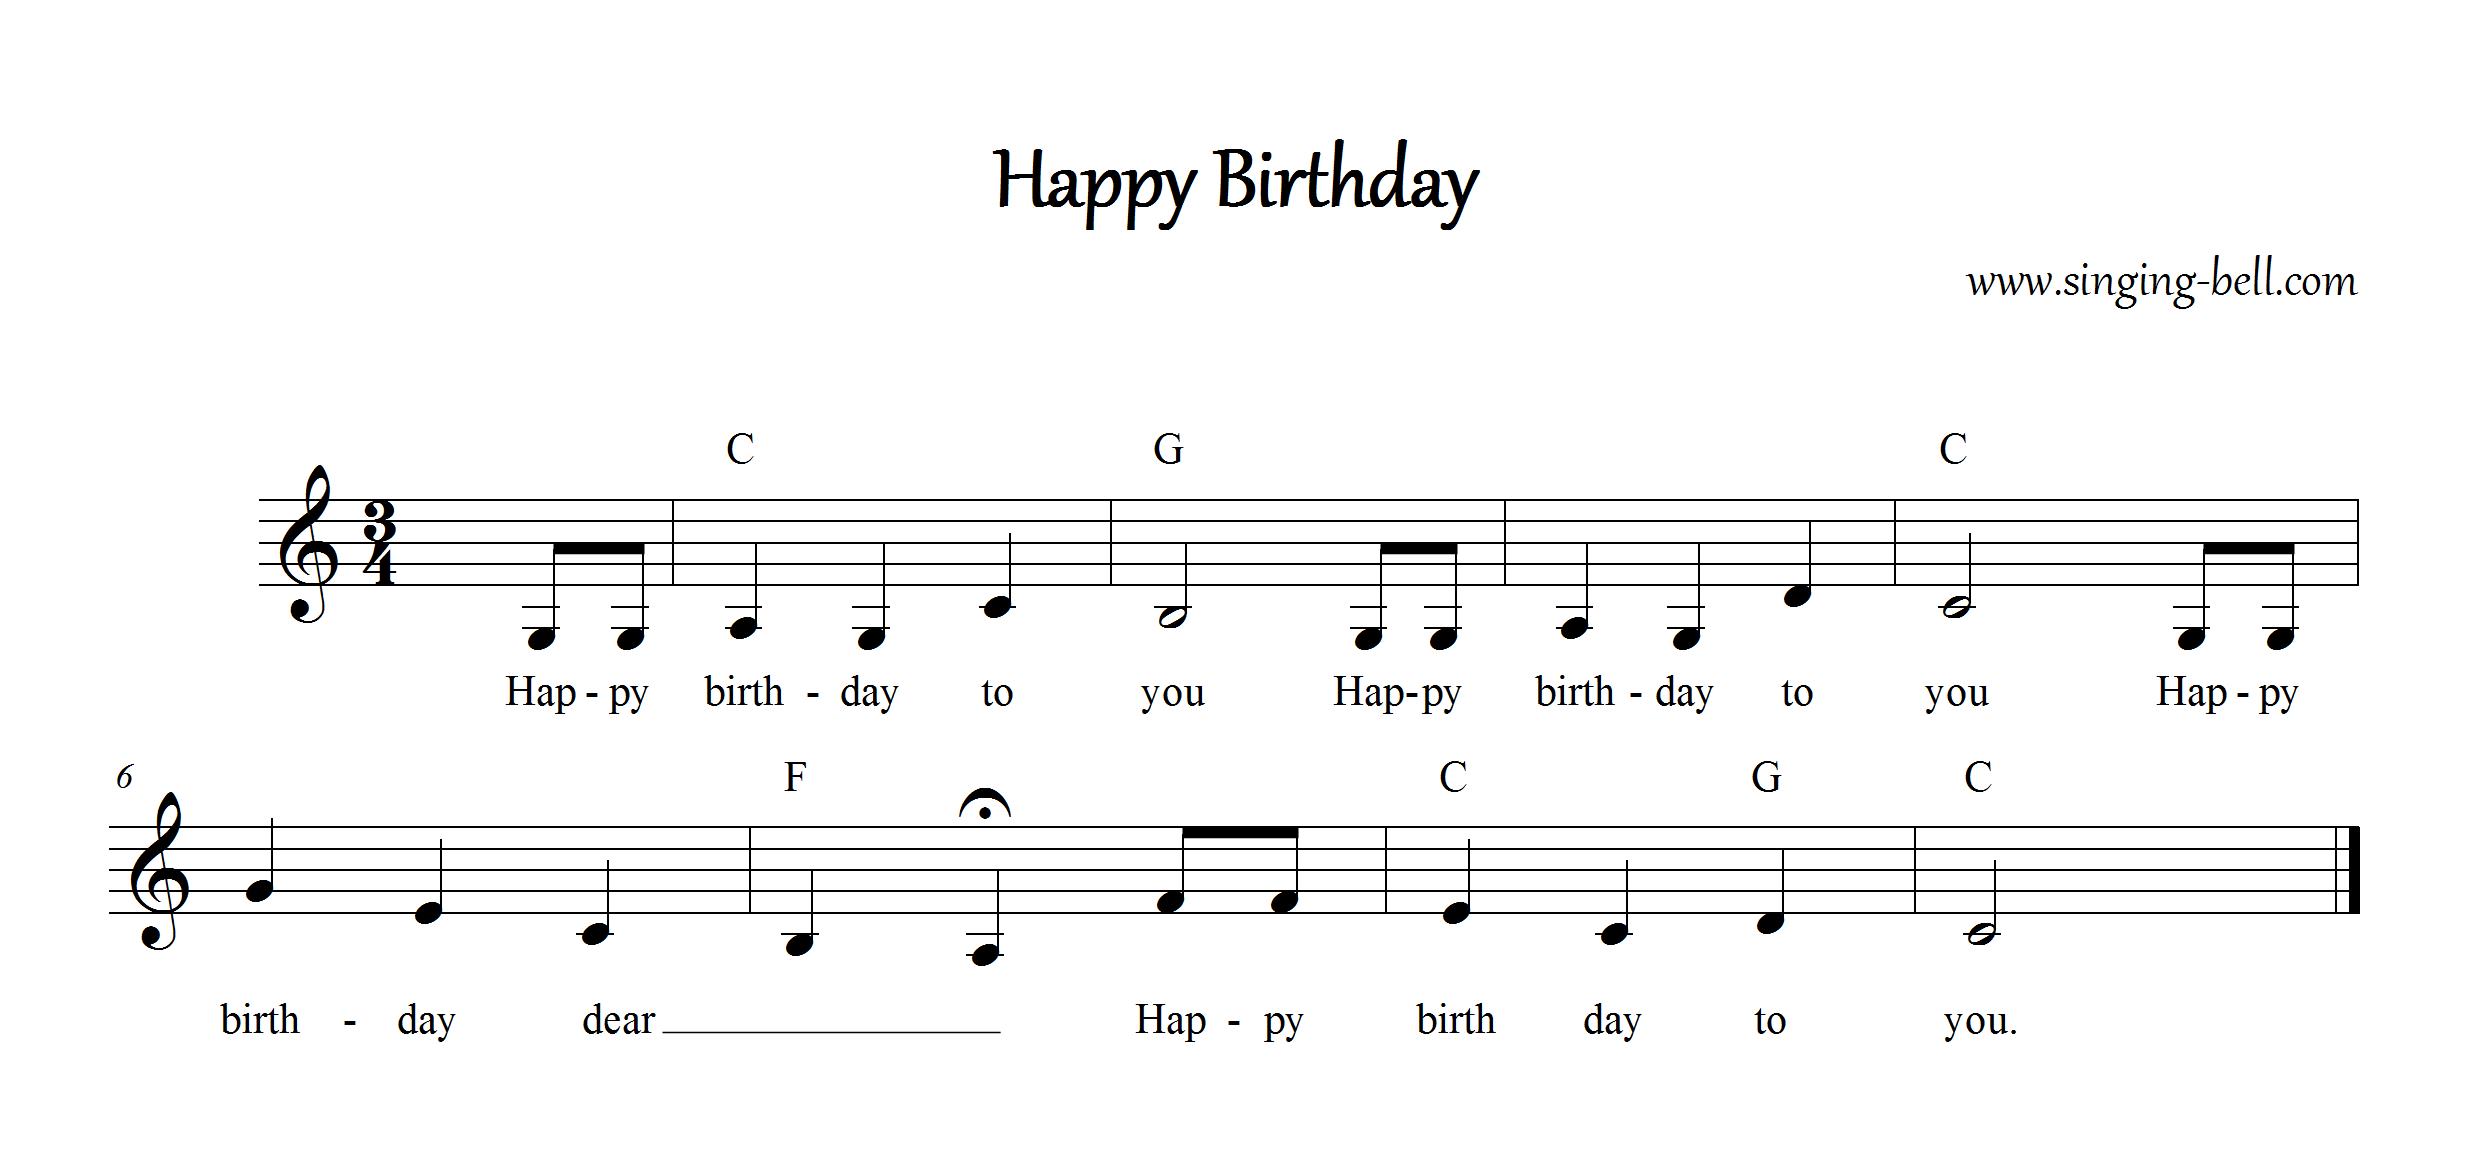 happy birthday song lyrics chords